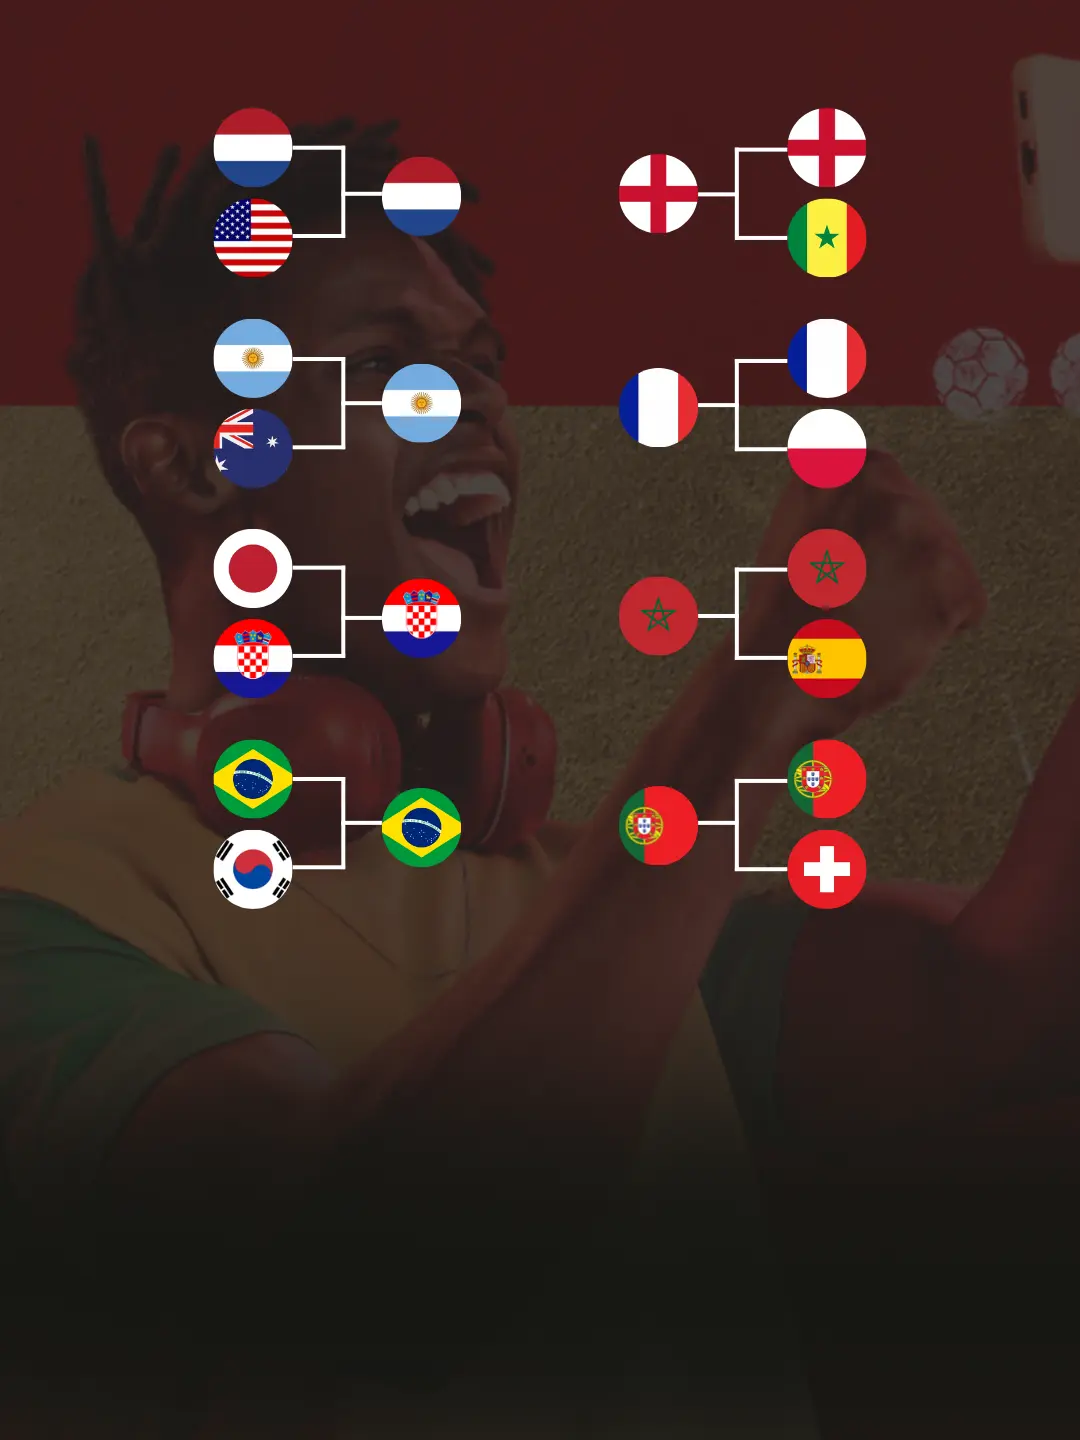 Chaveamento Copa do Mundo 2022, Datas e Horários